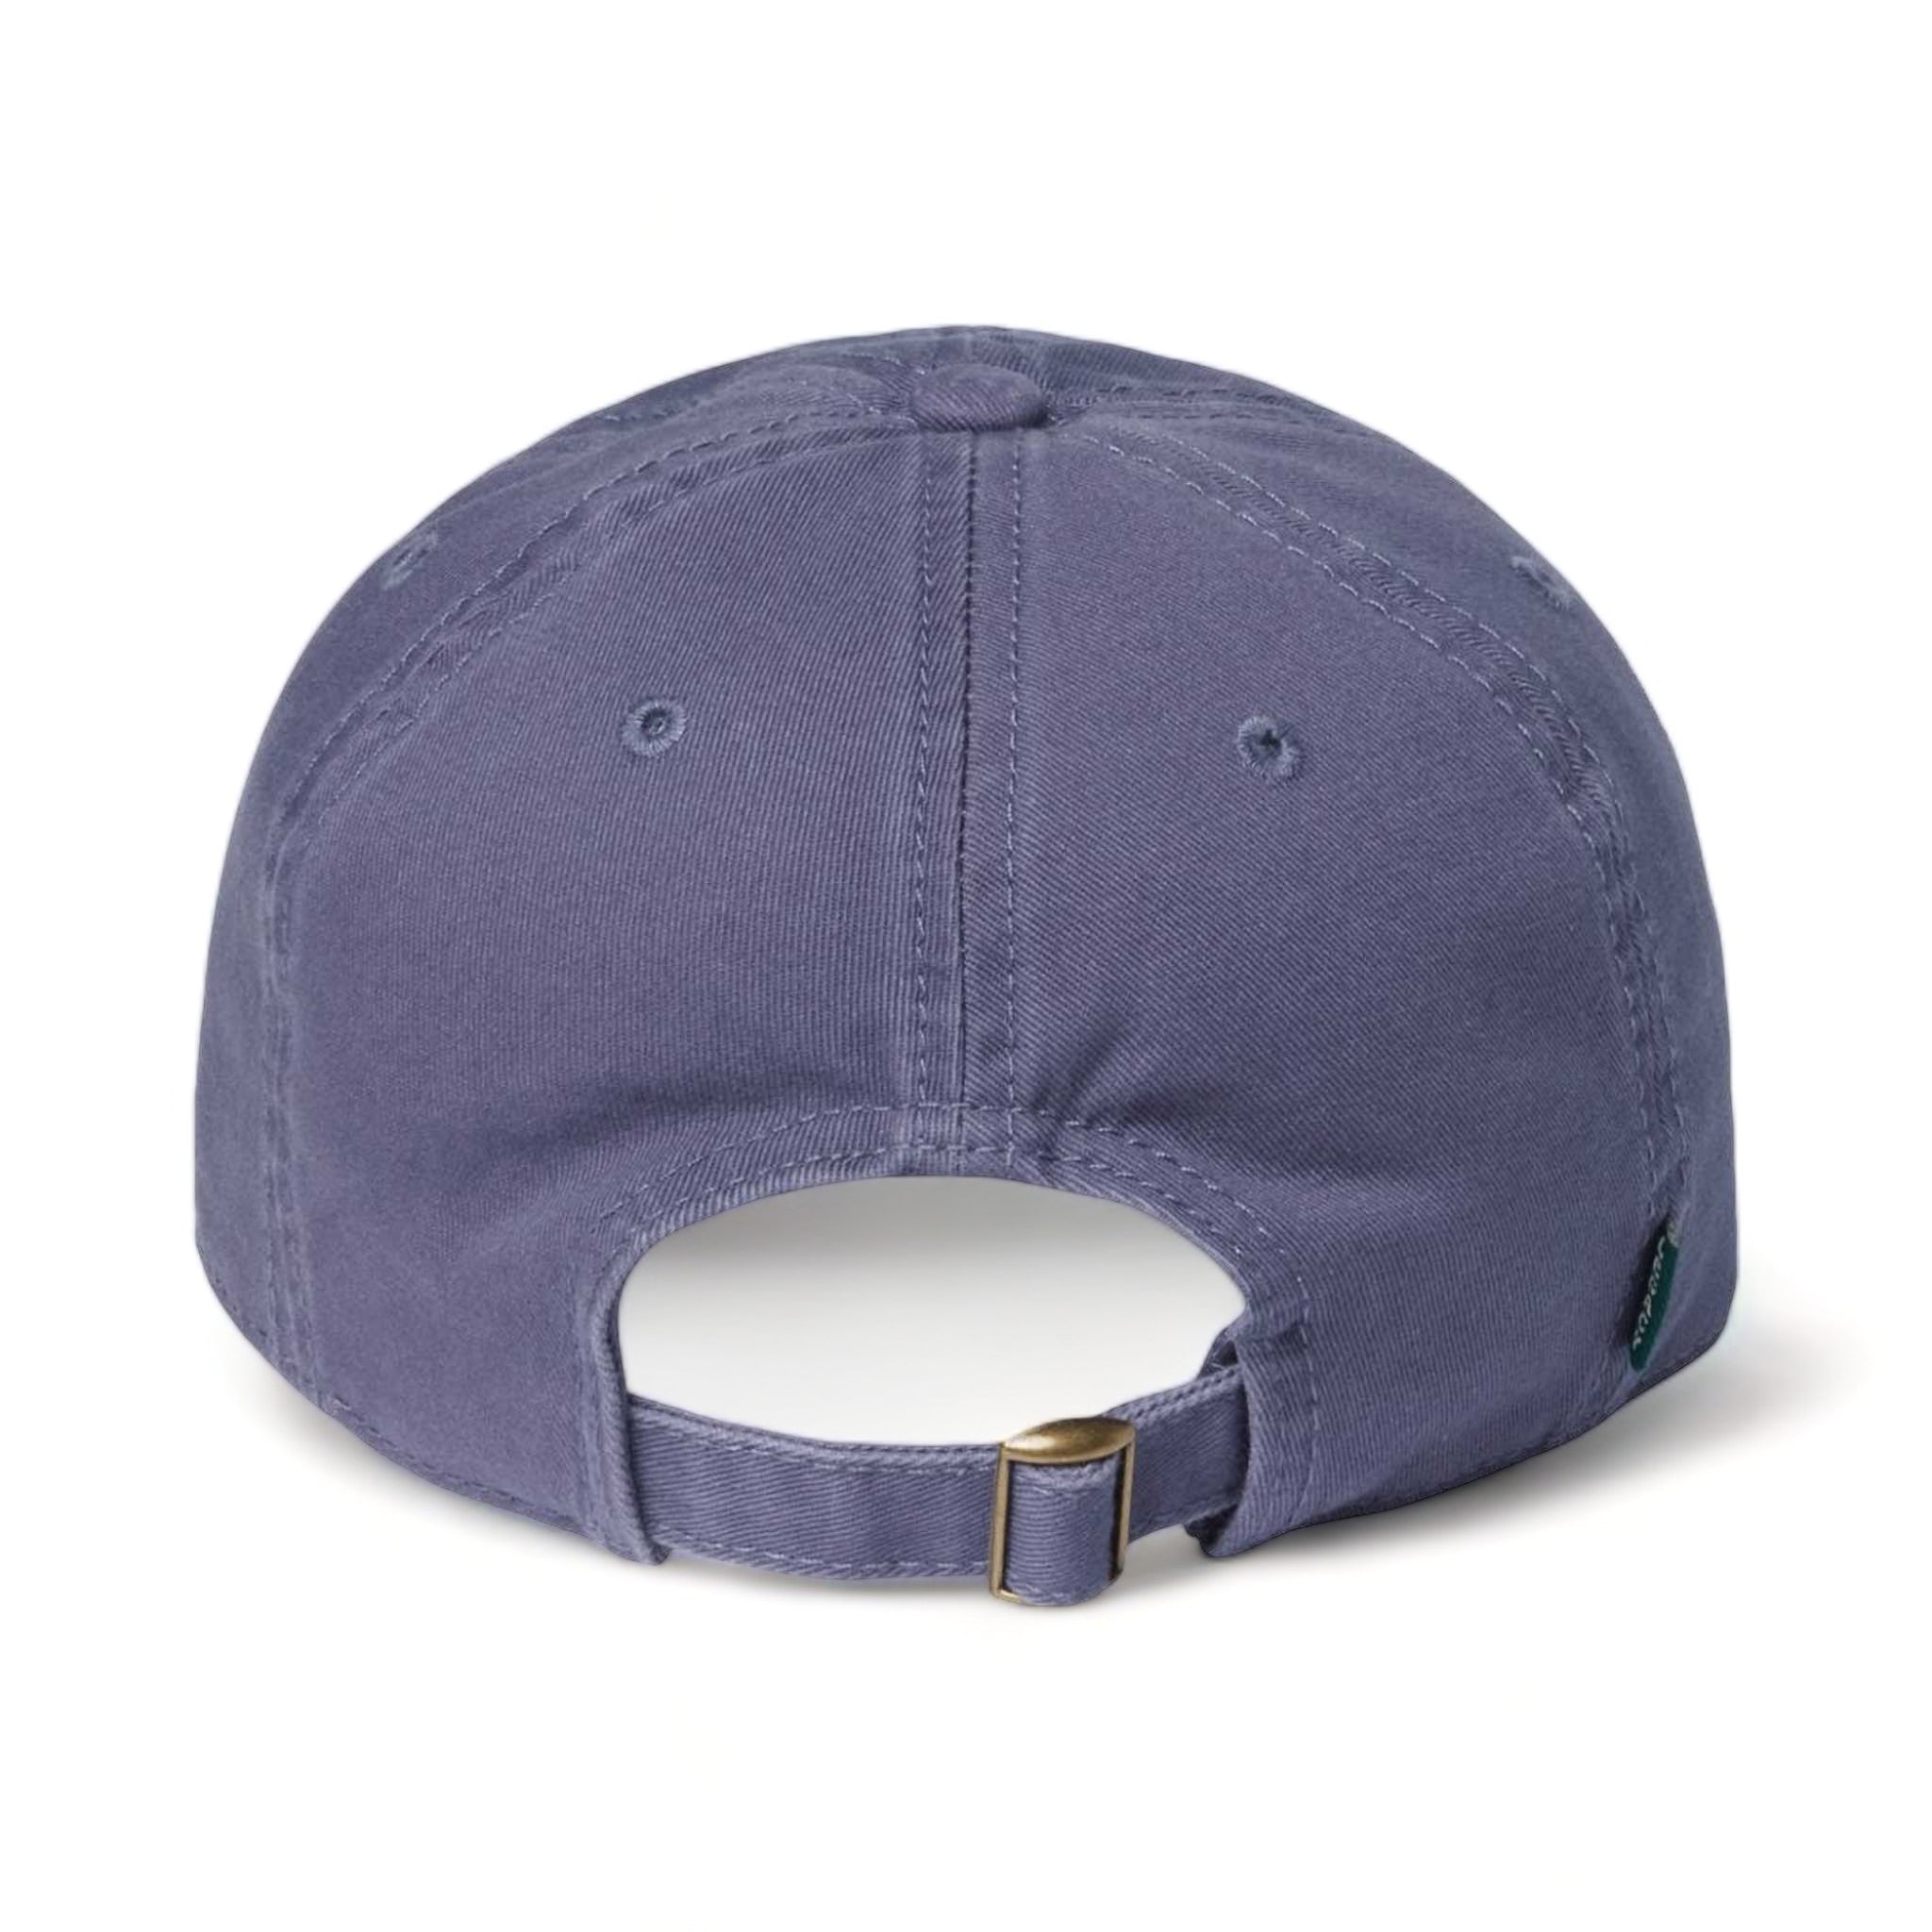 Back view of LEGACY EZA custom hat in slate blue